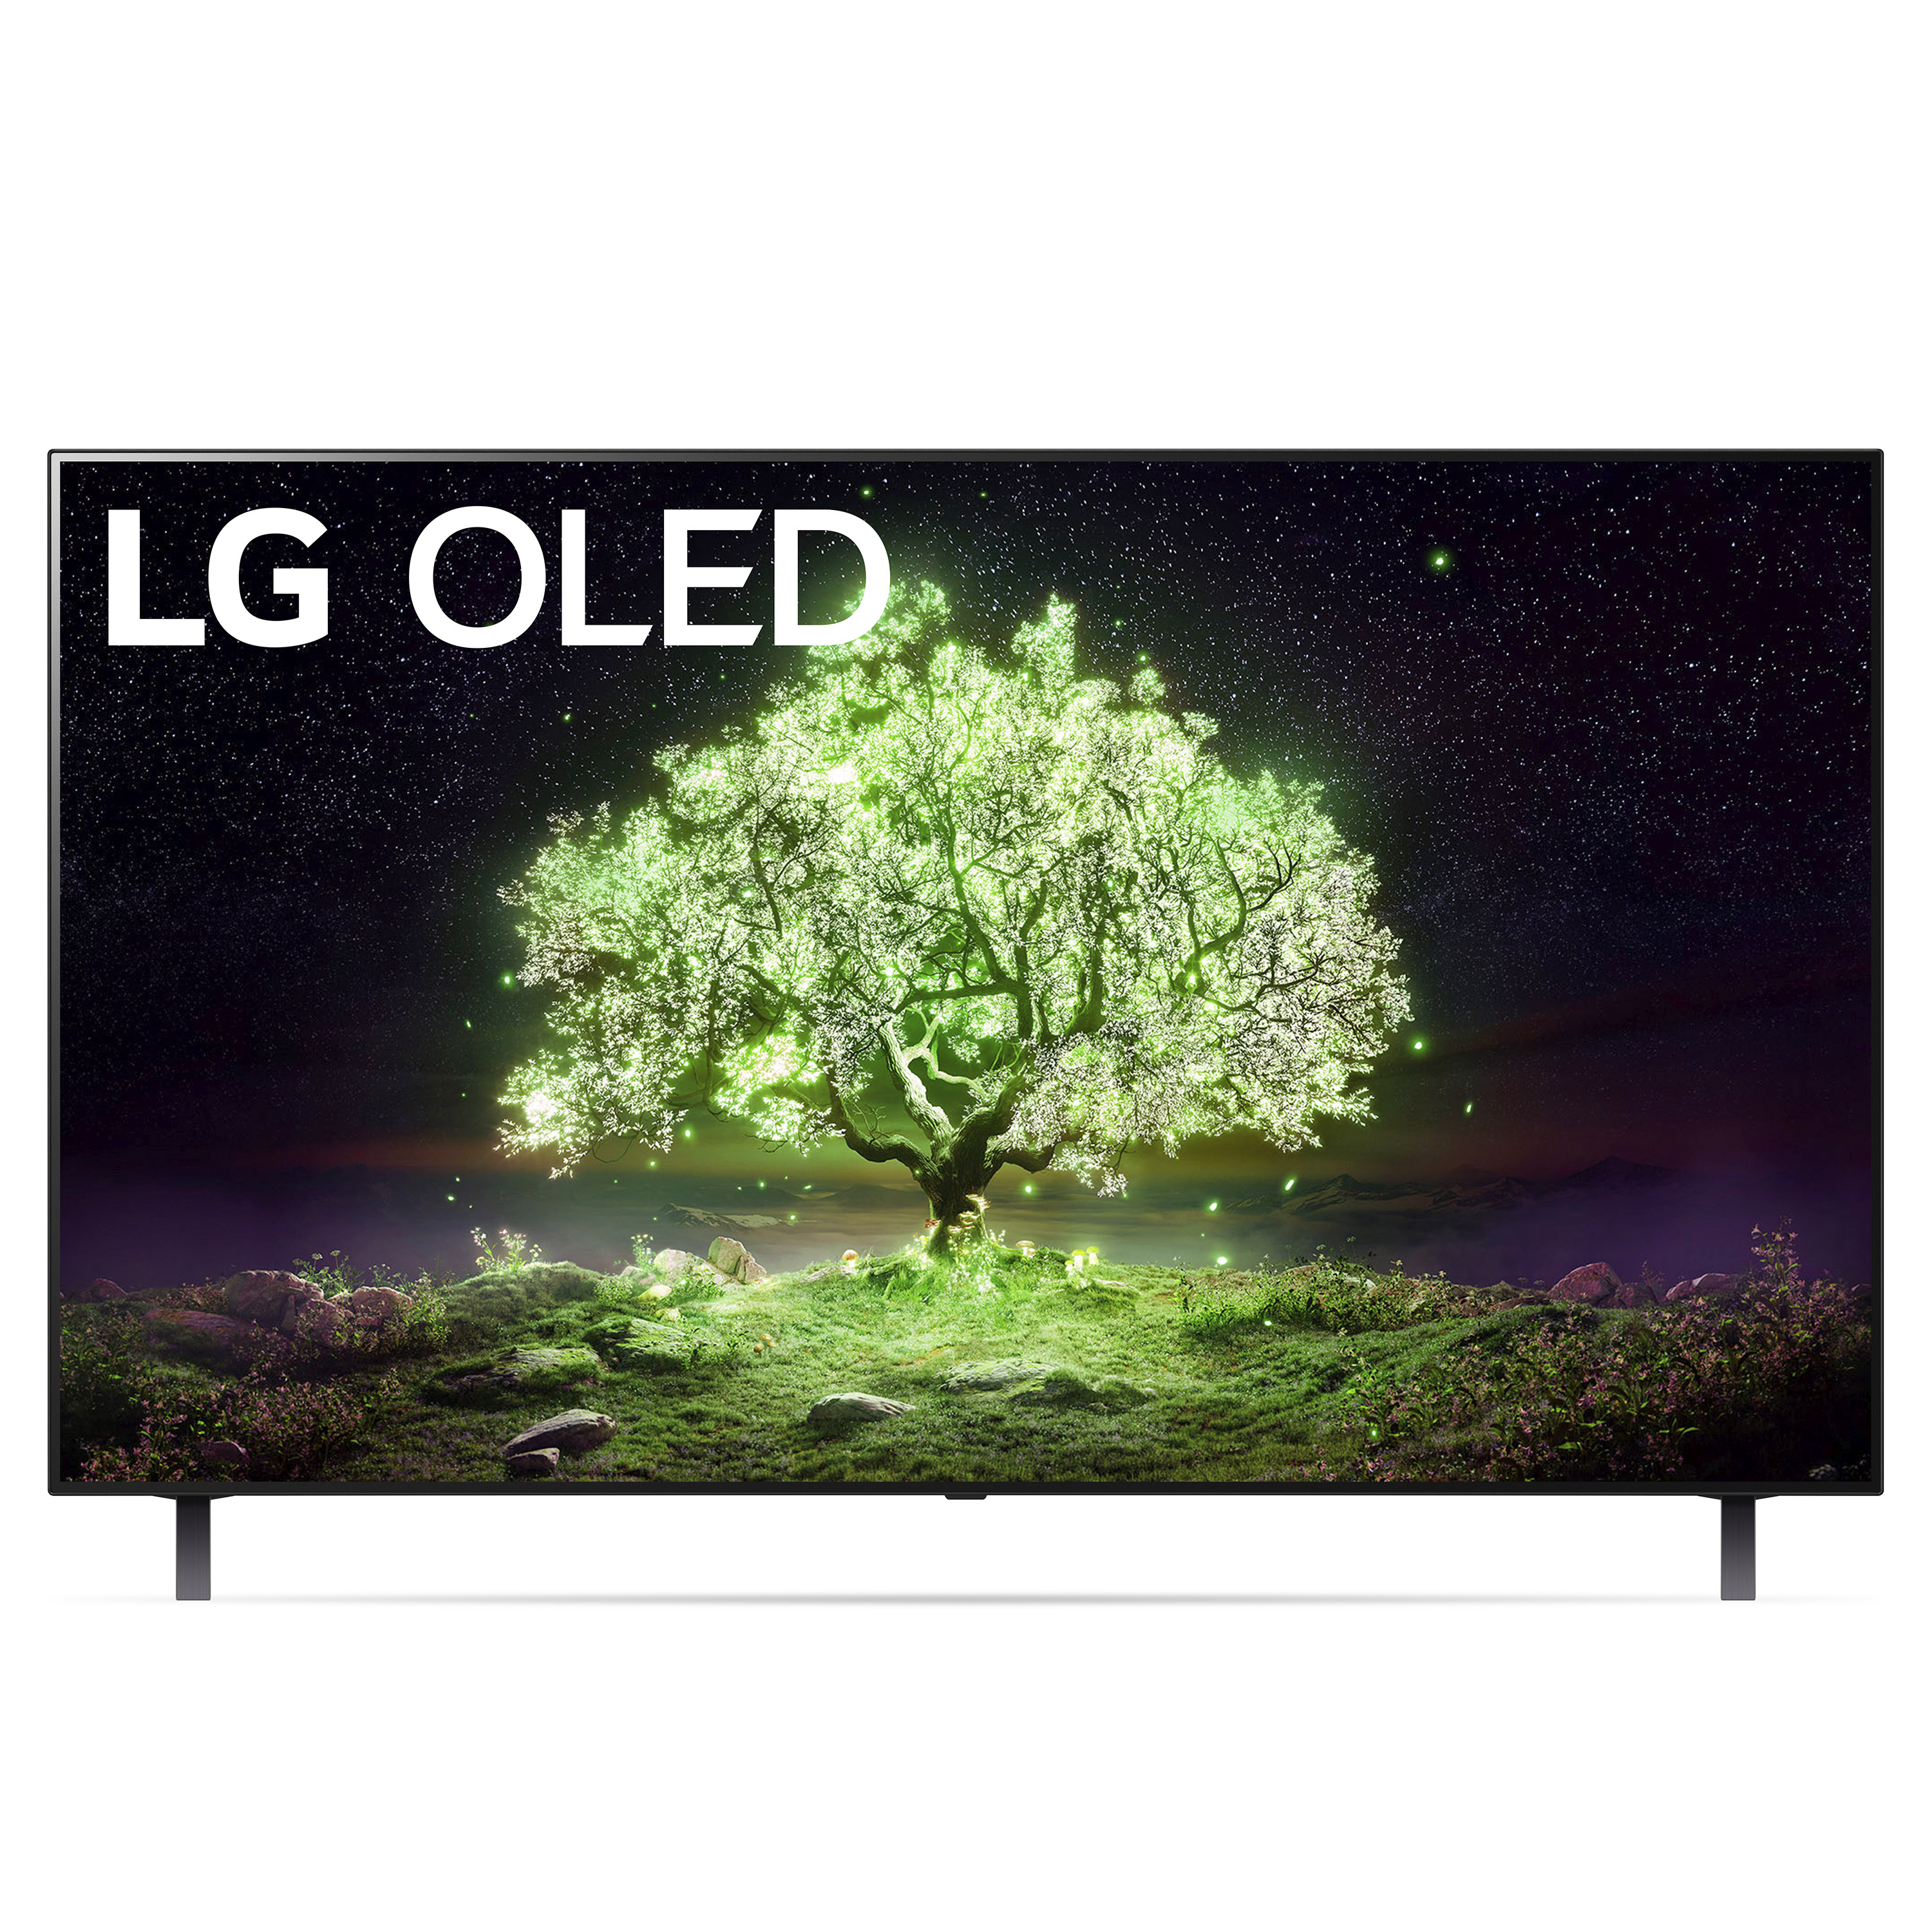 LG 65" Class 4K UHD Smart TV OLED A1 Series OLED65A1PUA - image 1 of 29